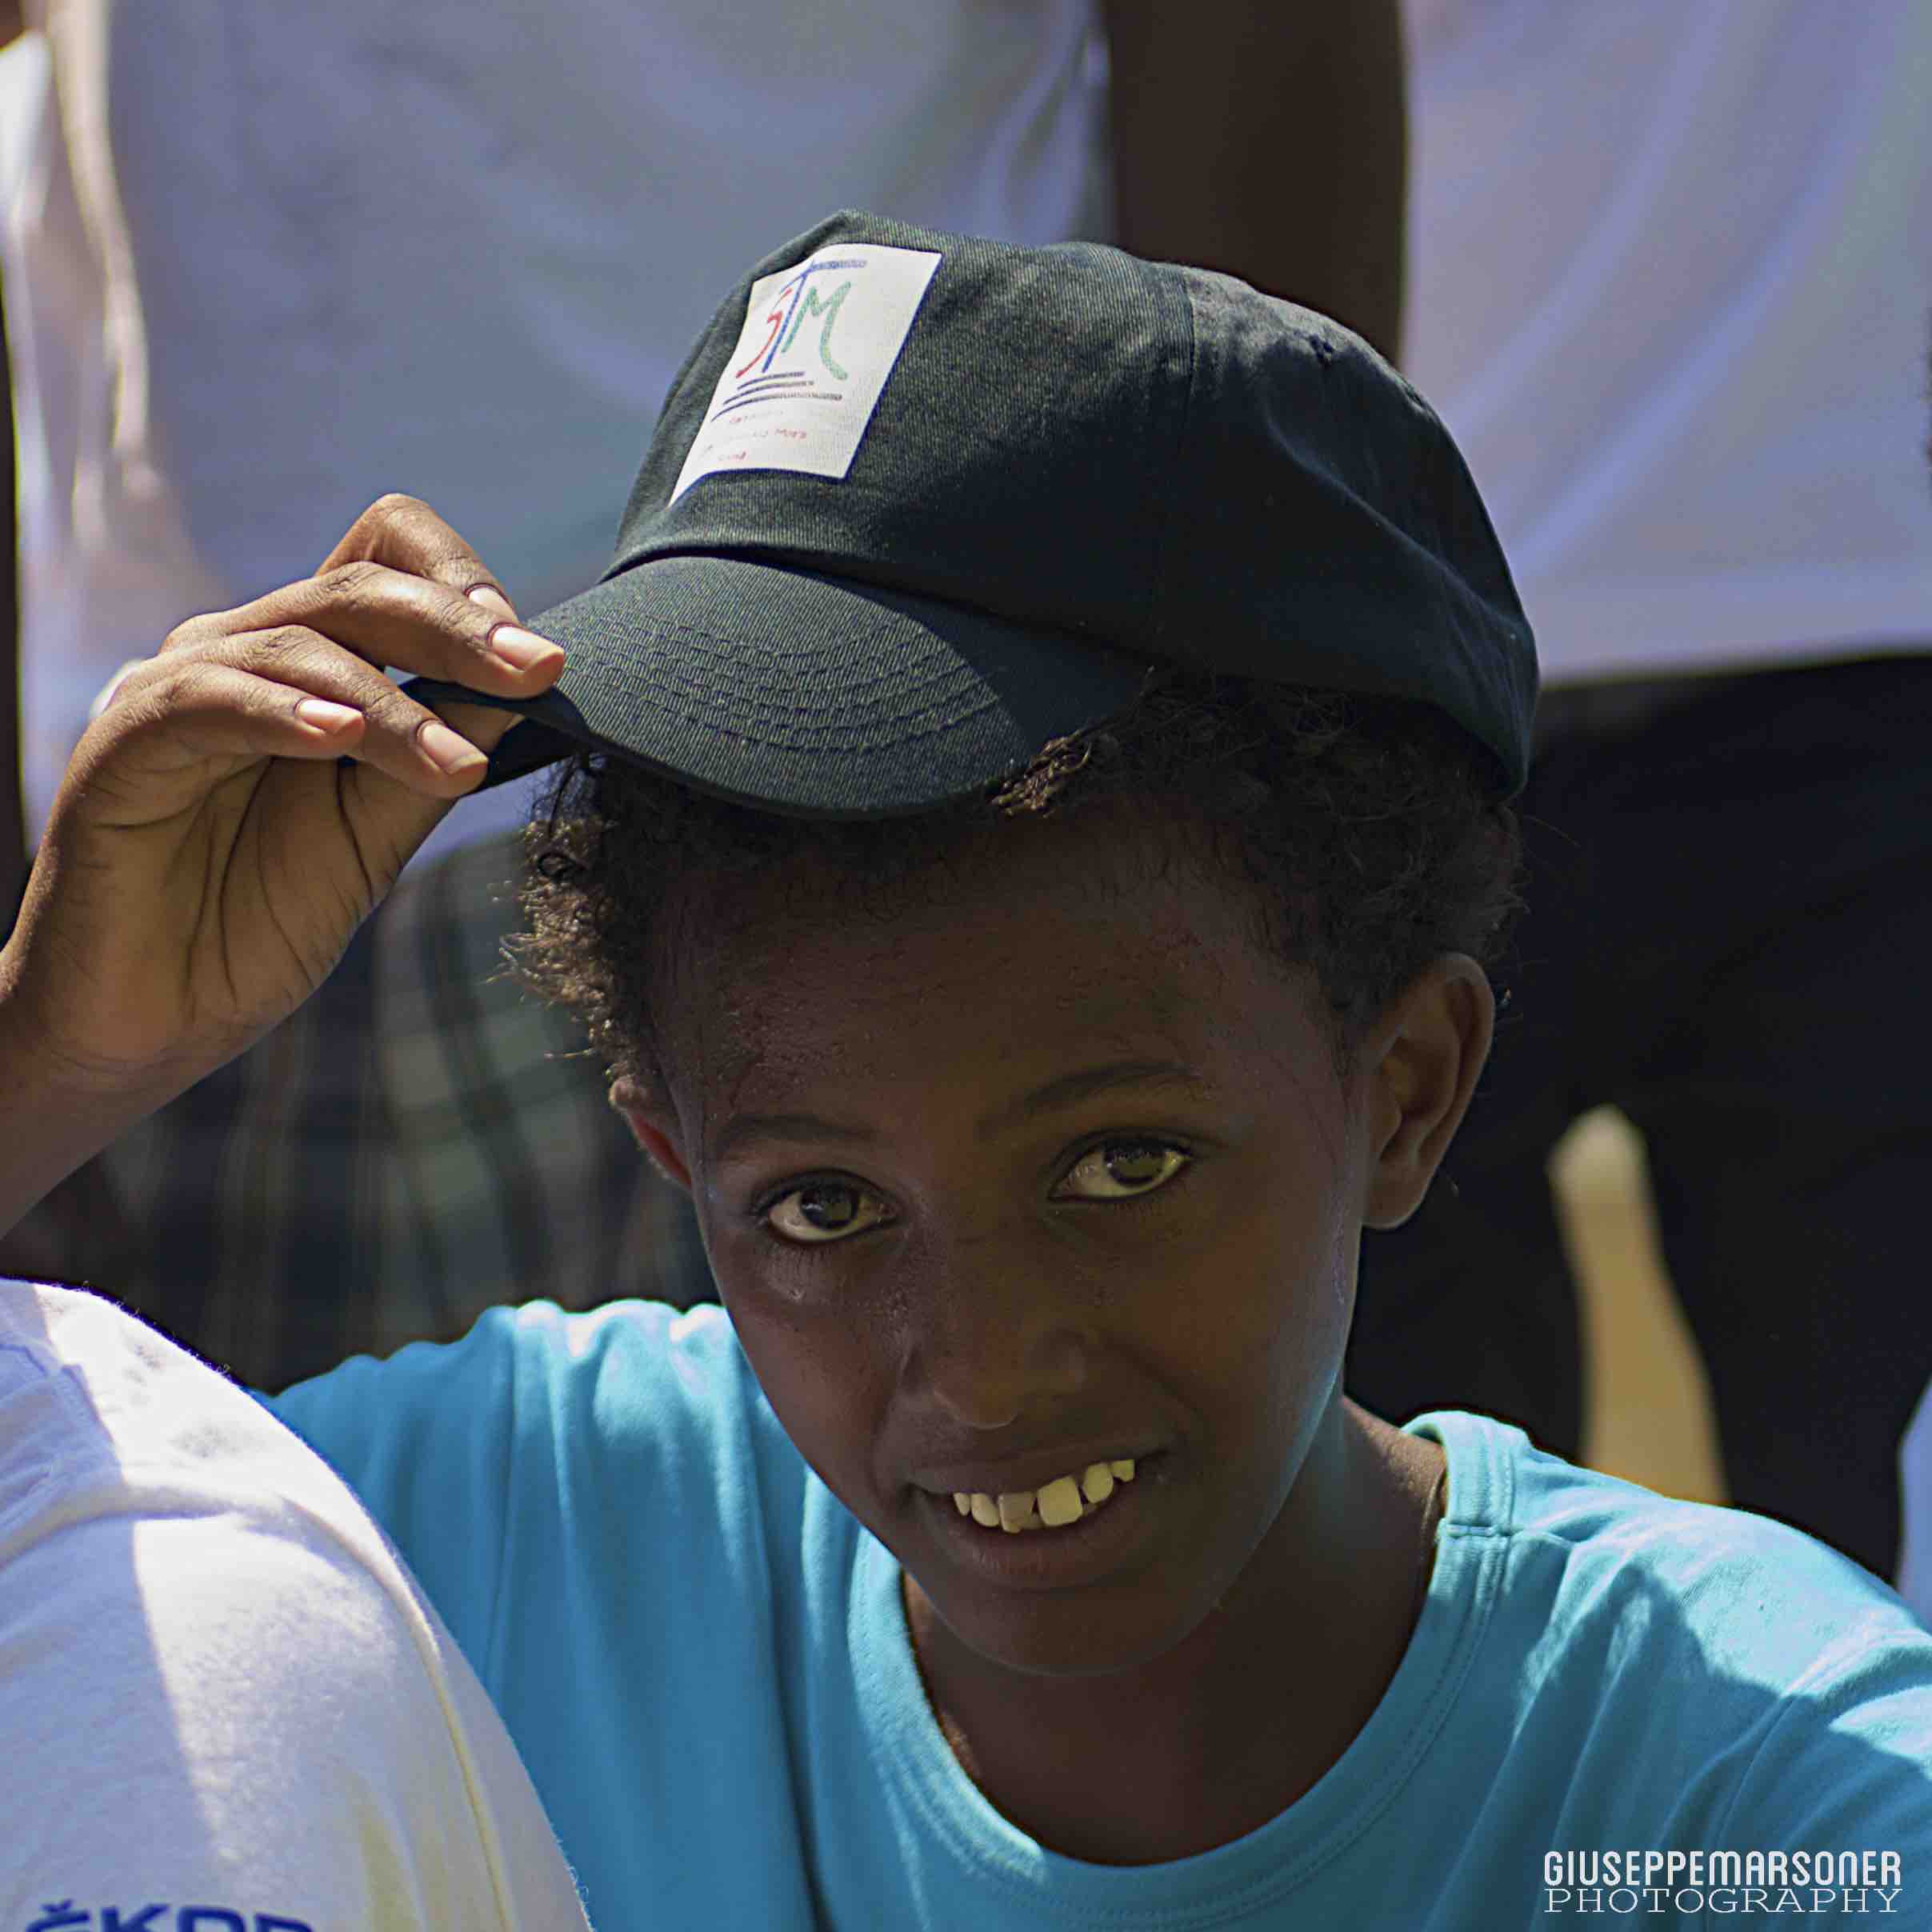 Torneo di pallavolo con i rifugiati eritrei e la Comunità di Sant'Edigio